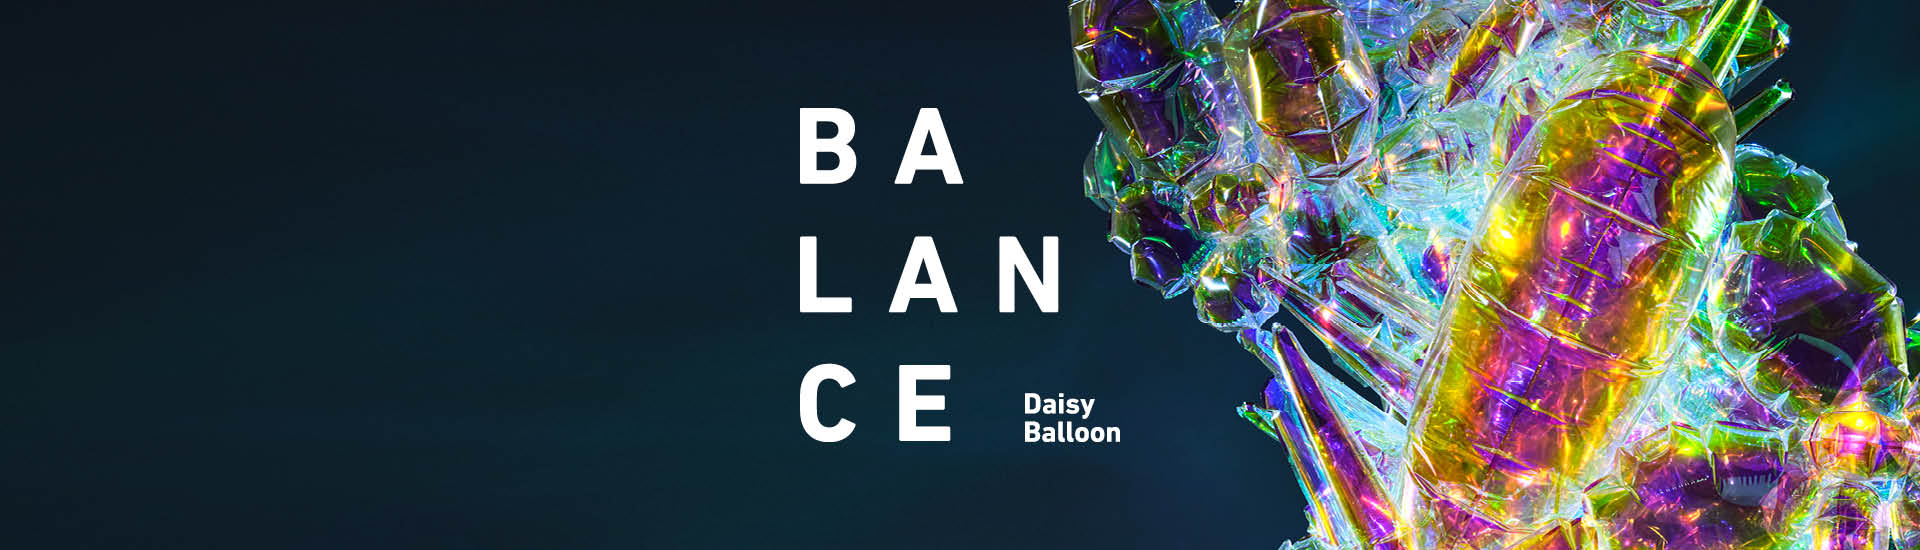 BALANCE - DAISY BALLOON